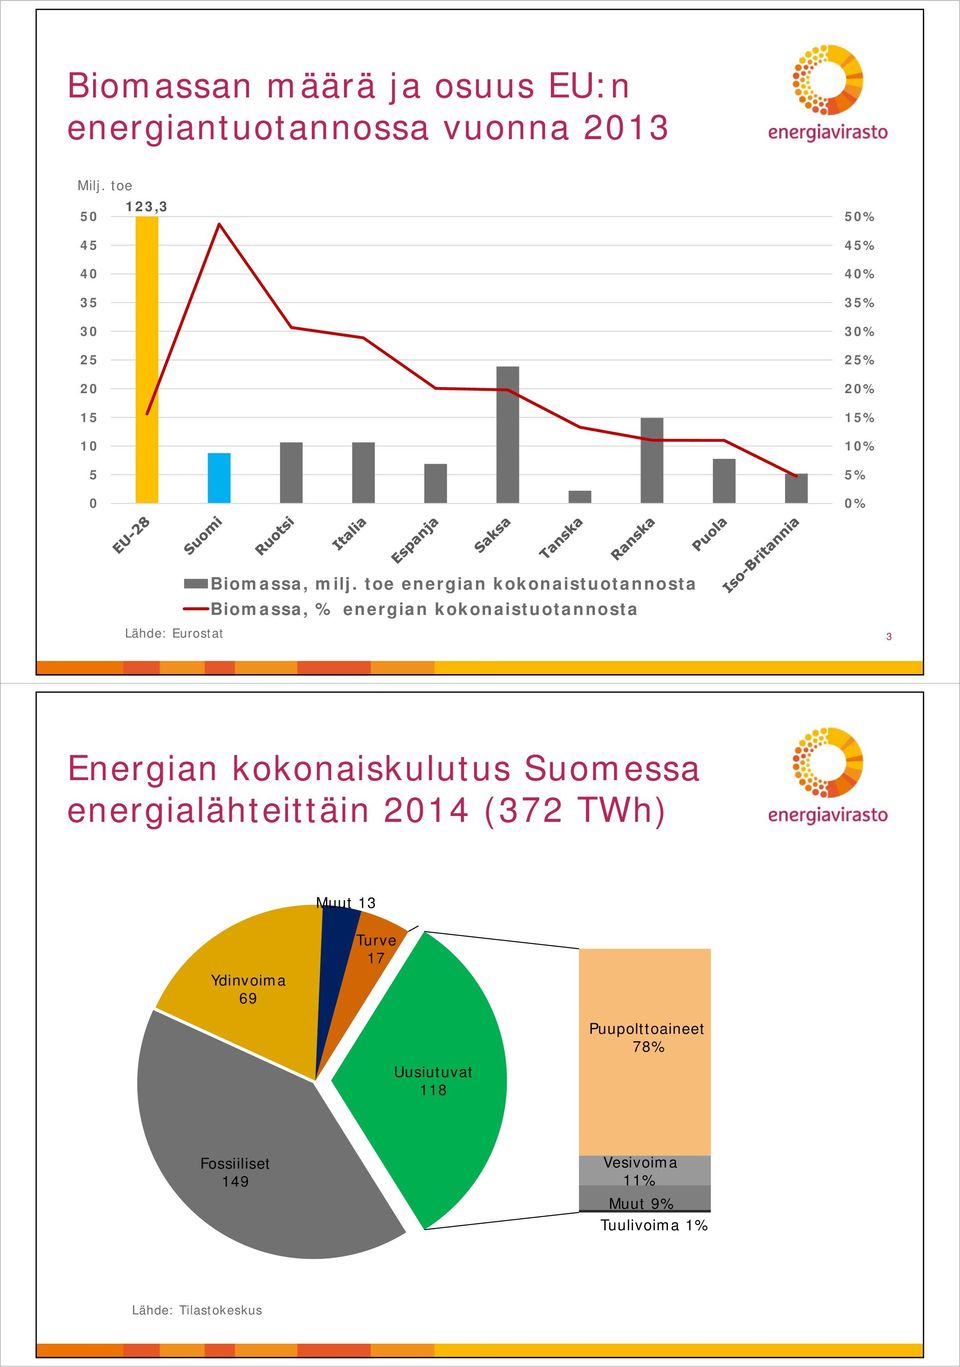 toe energian kokonaistuotannosta Biomassa, % energian kokonaistuotannosta 3 Energian kokonaiskulutus